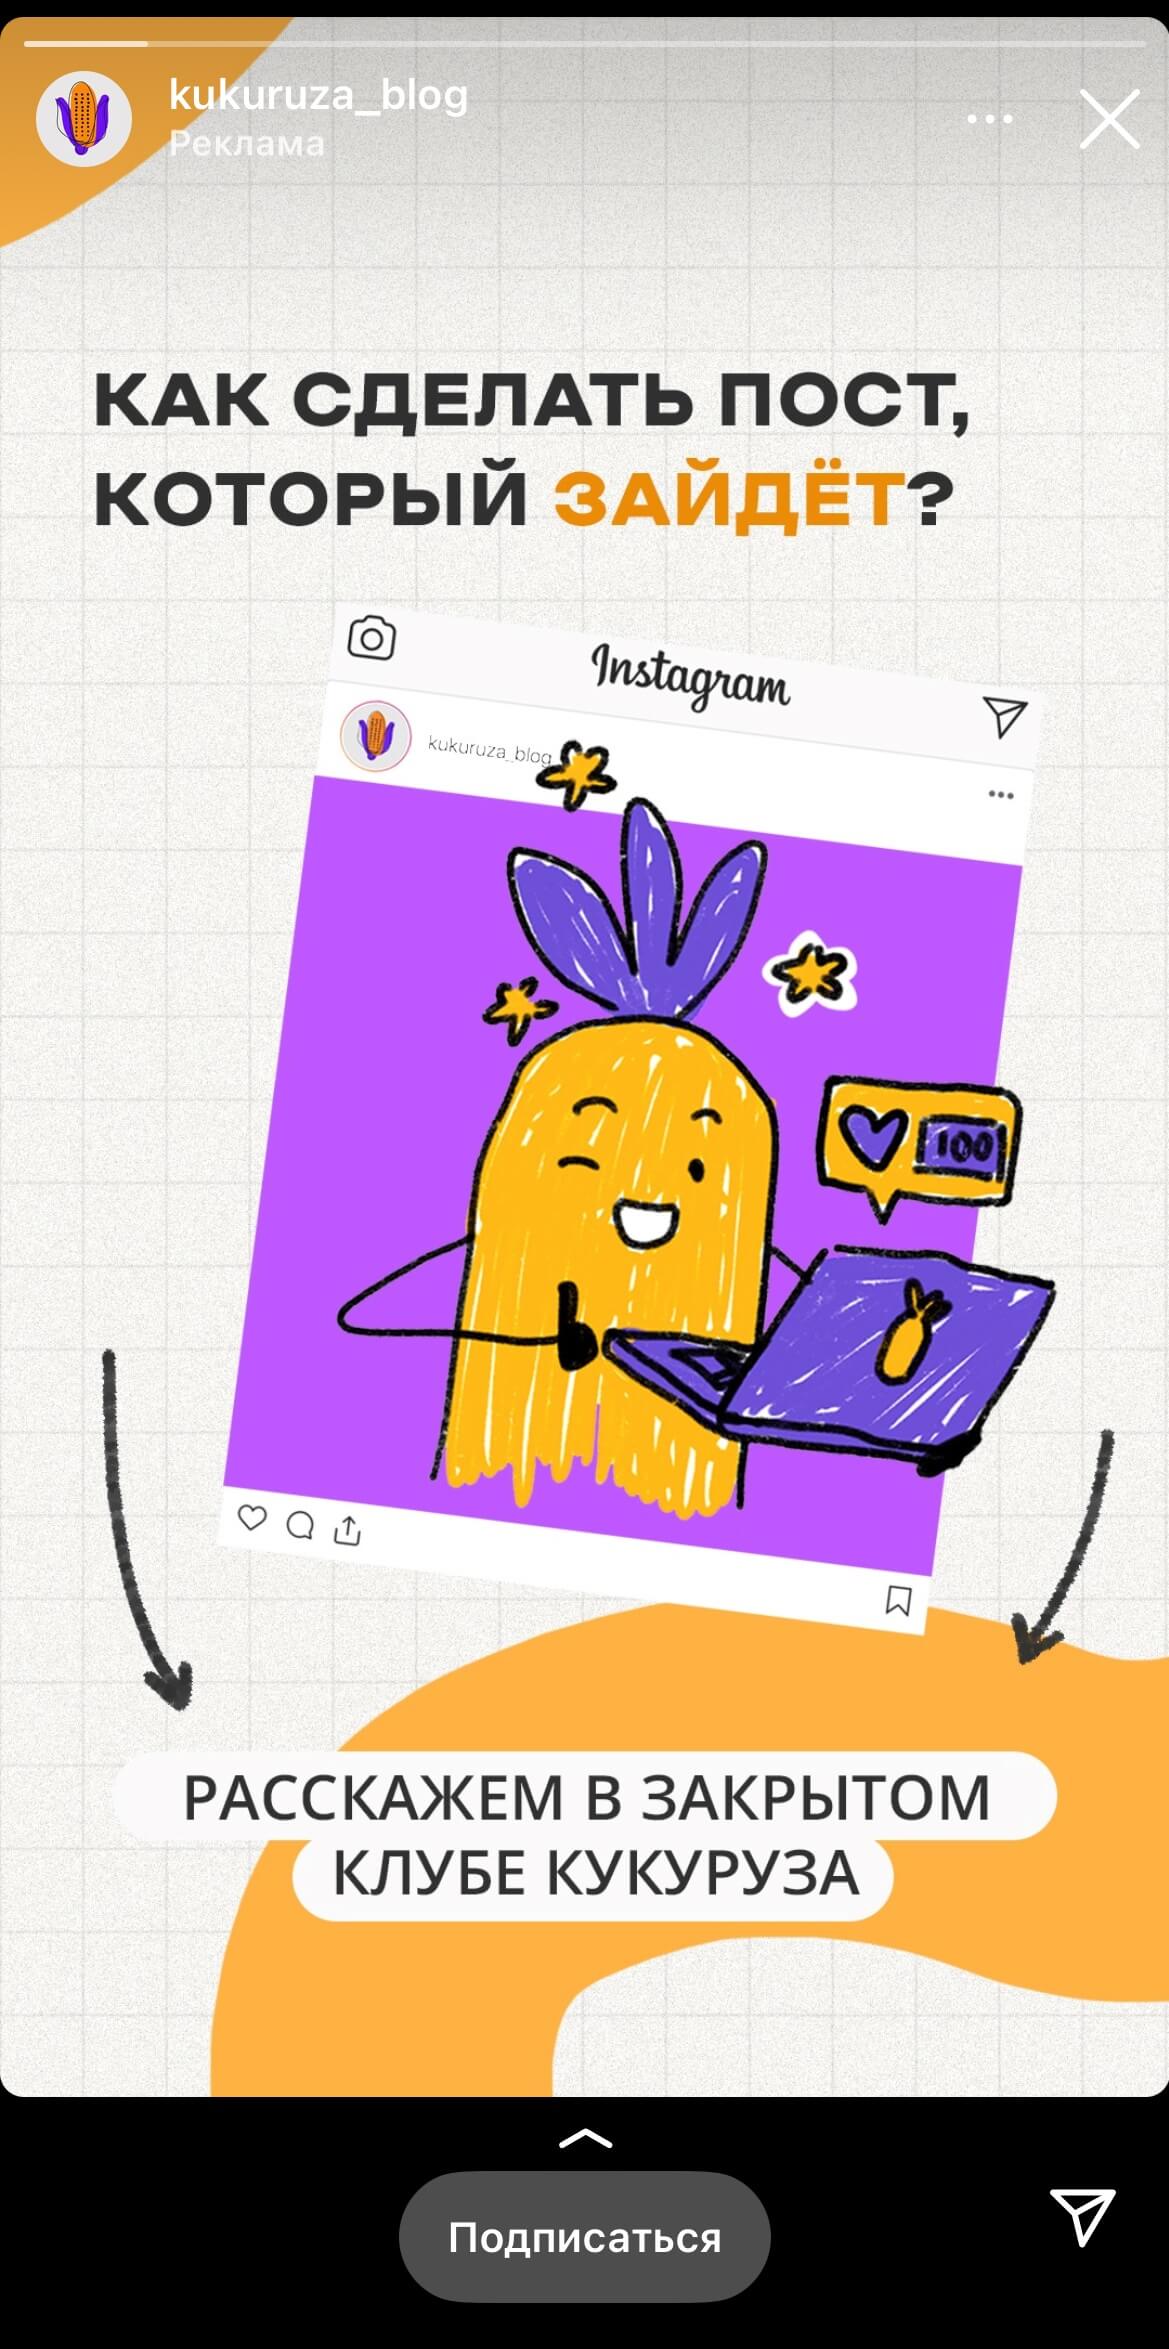 Реклама блога Кукуруза в сторис Instagram*